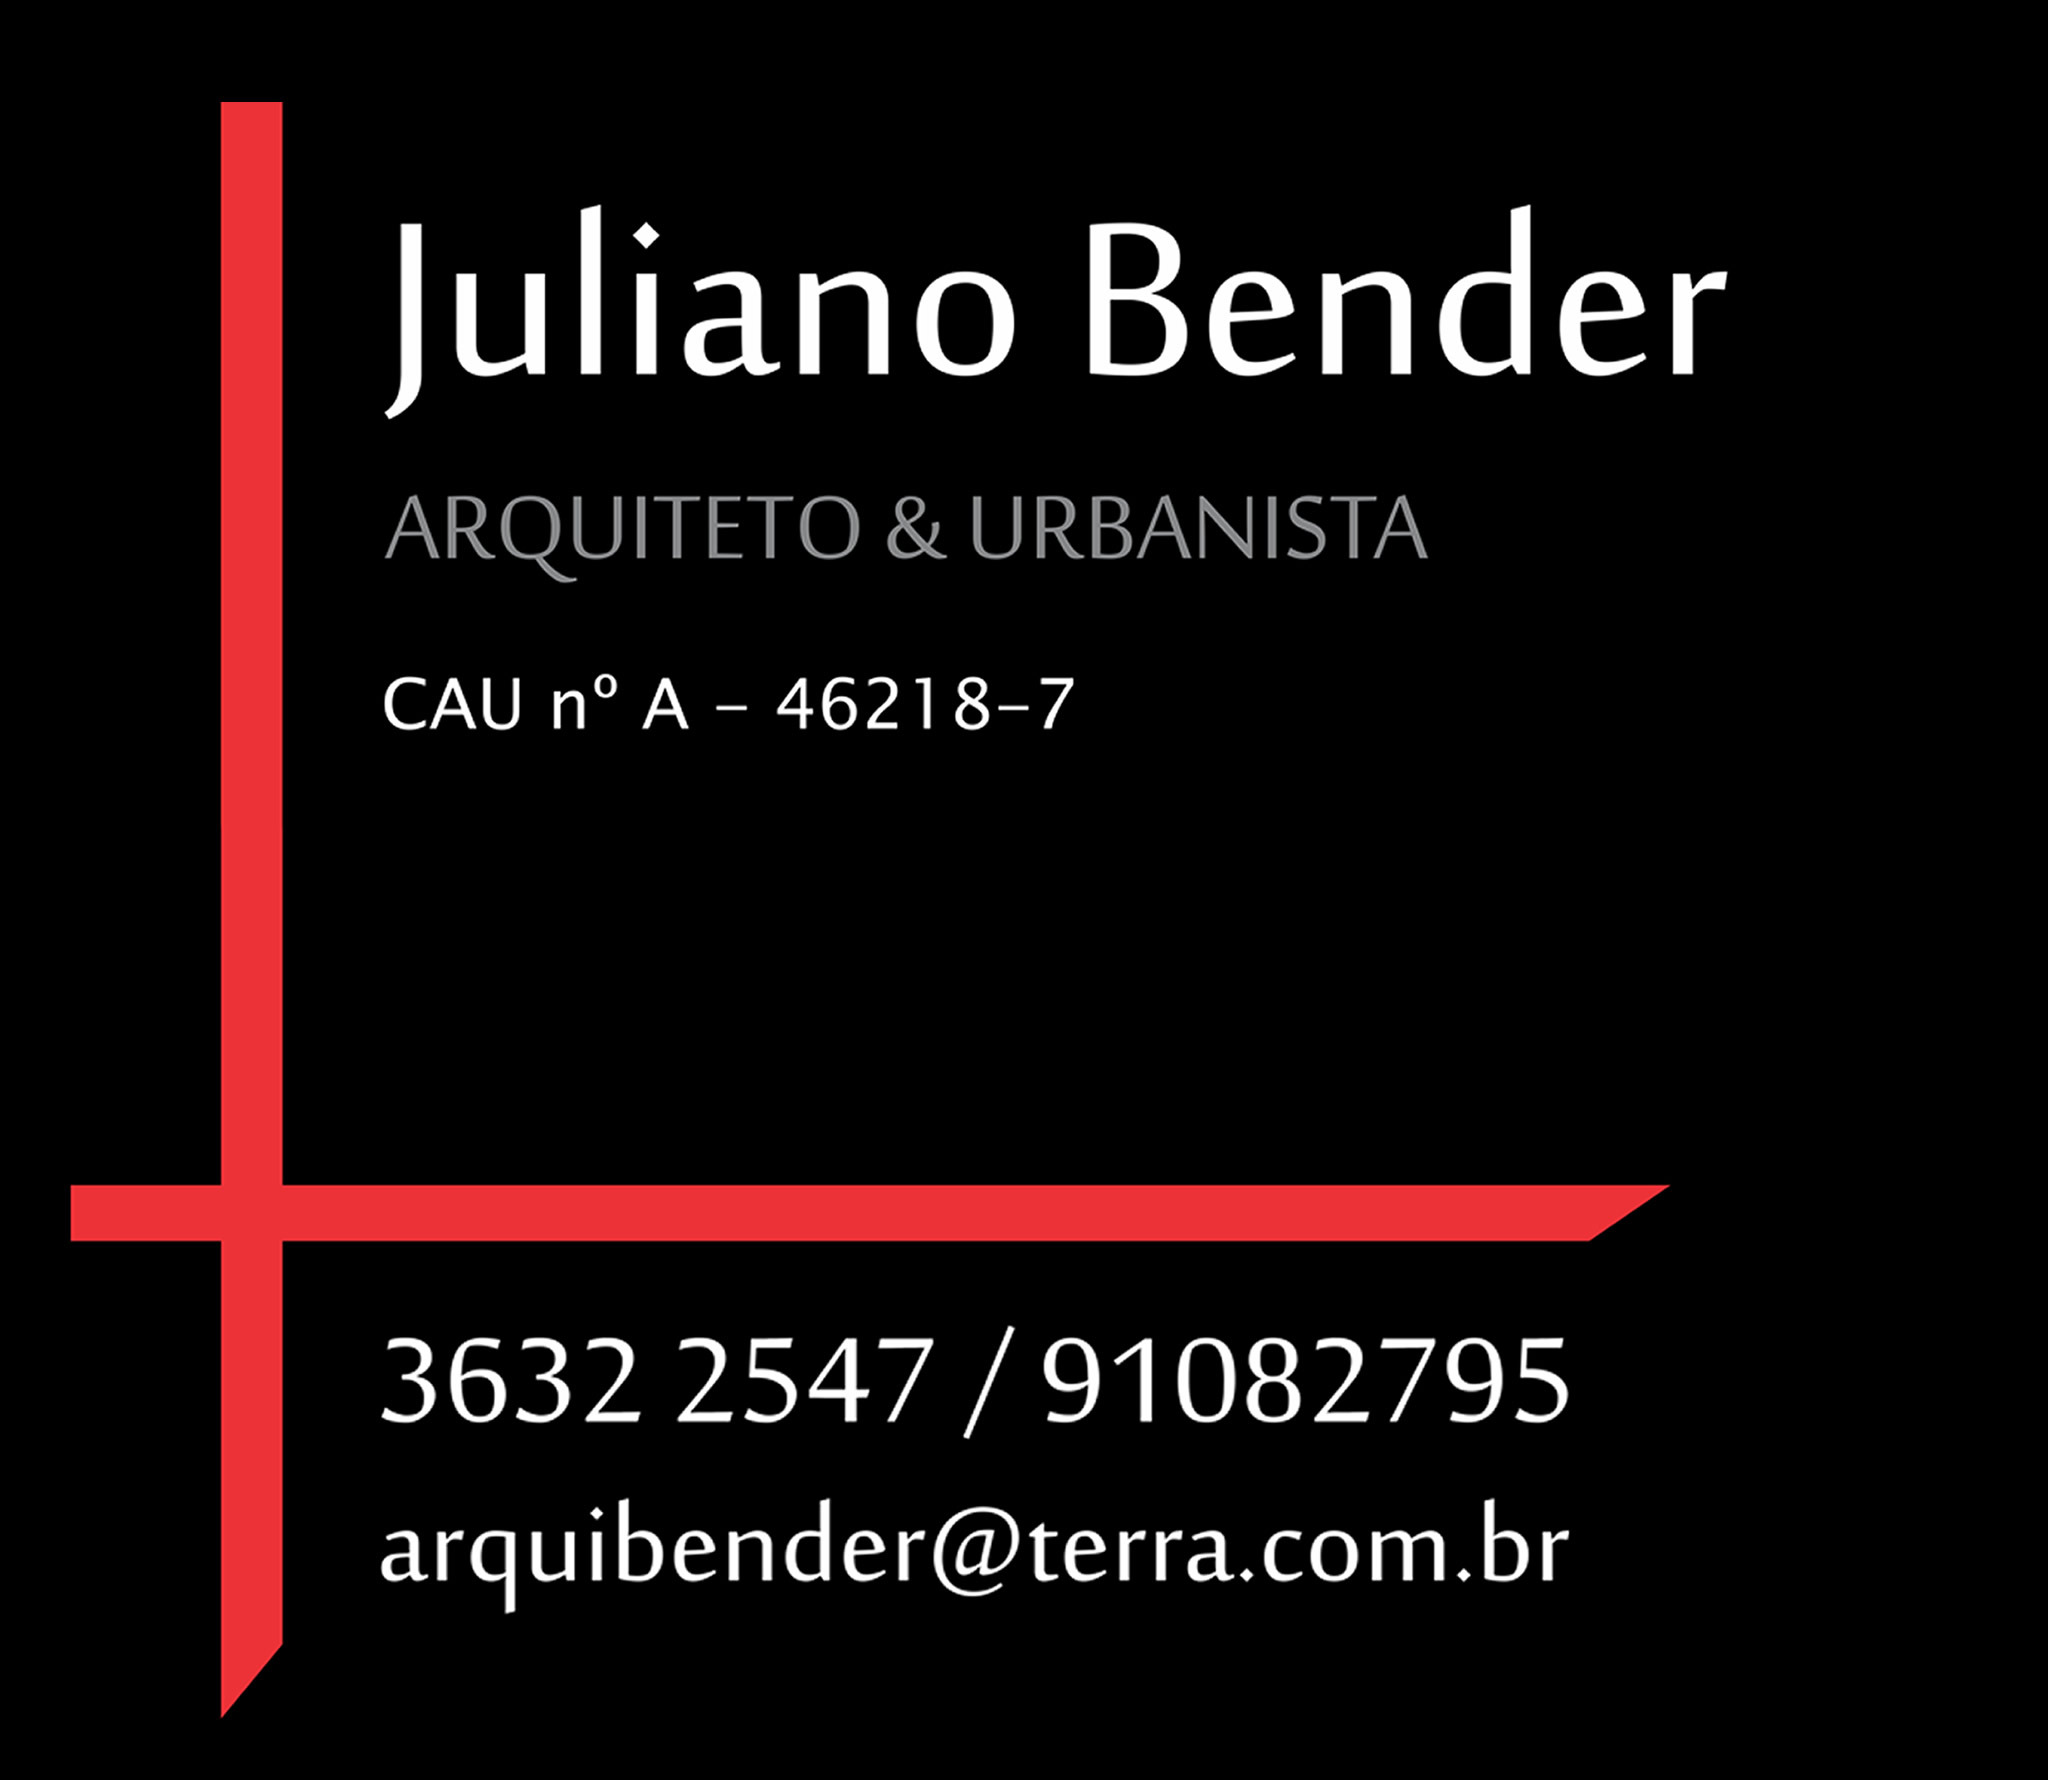 JULIANO BENDER